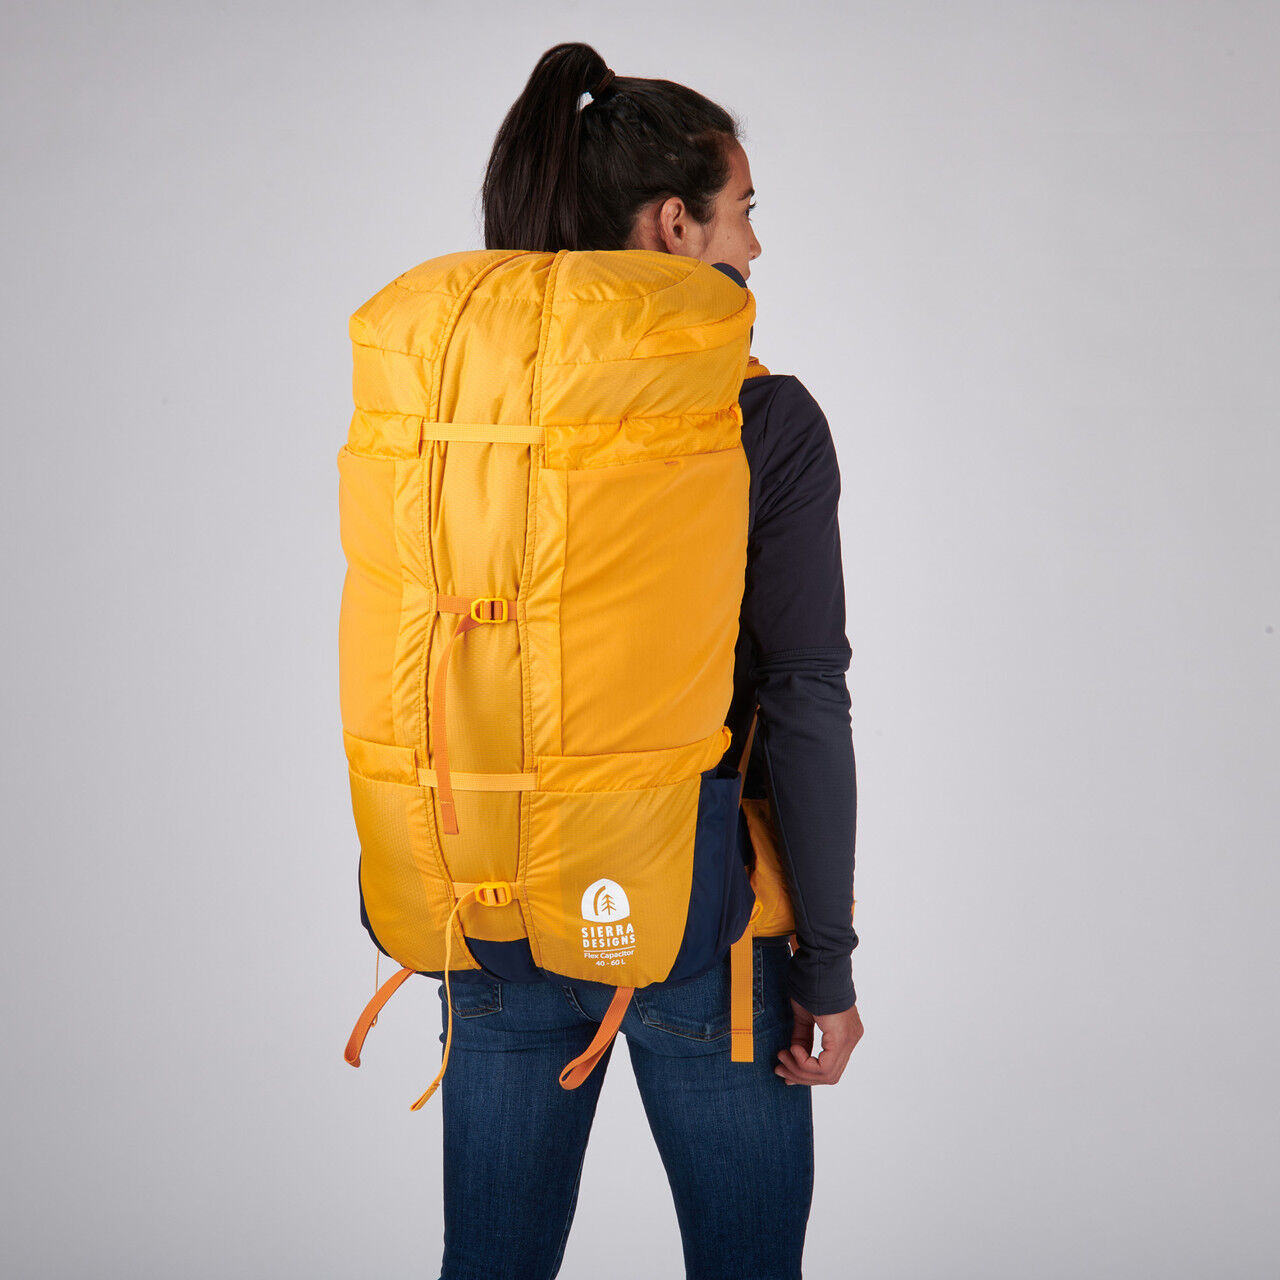 Sierra Designs Flex Capacitor 40-60L - Hiking backpack | Hardloop